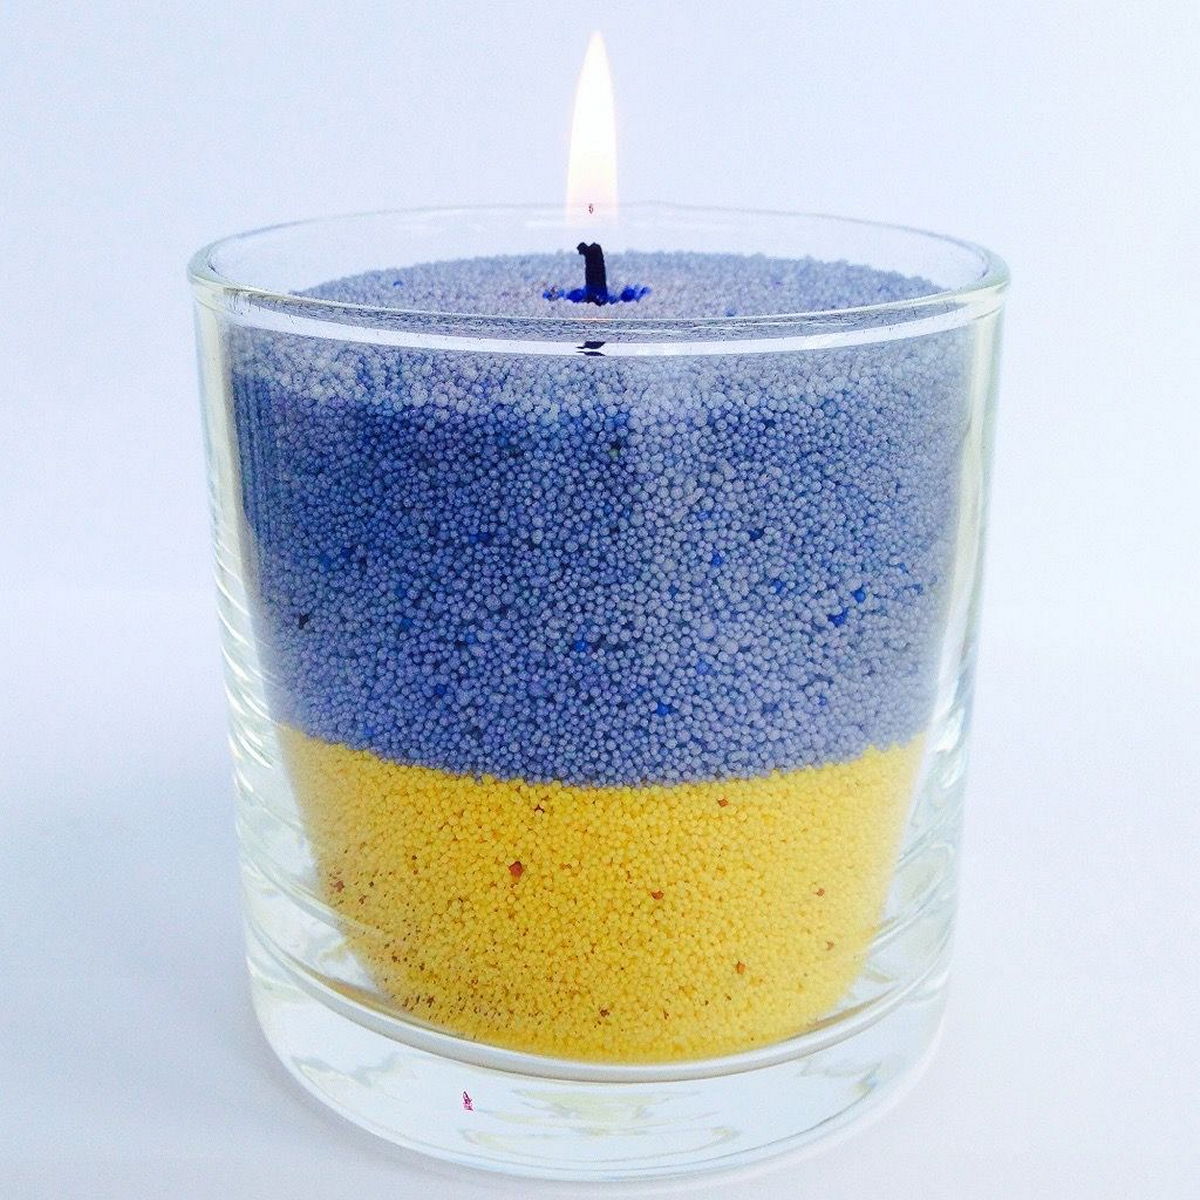 Підсвітка для унітазу і лампа Шрейдер: що допомагає українцям виживати без світла – досвід реальних людей